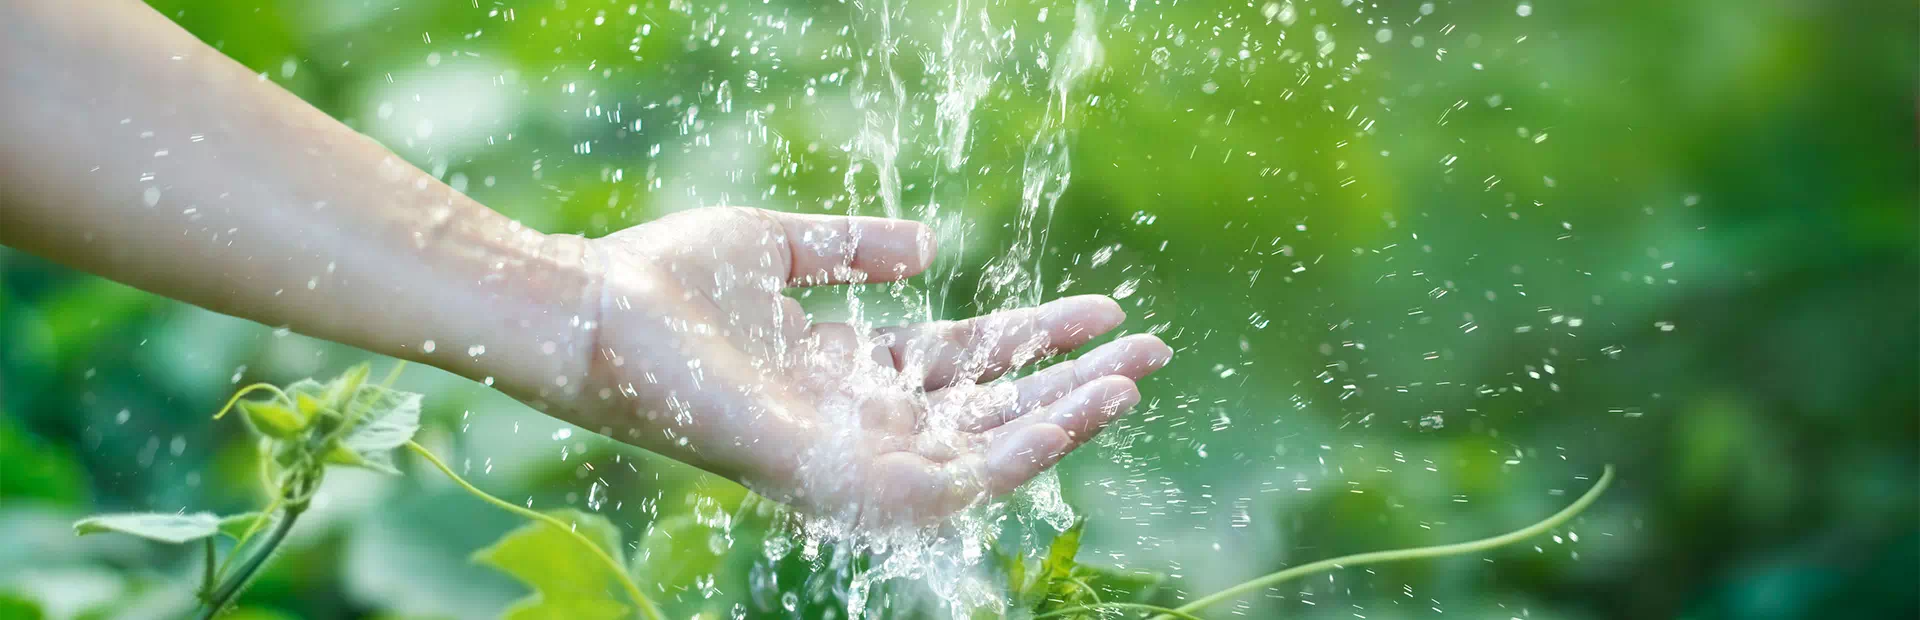 woda oblewająca rękę